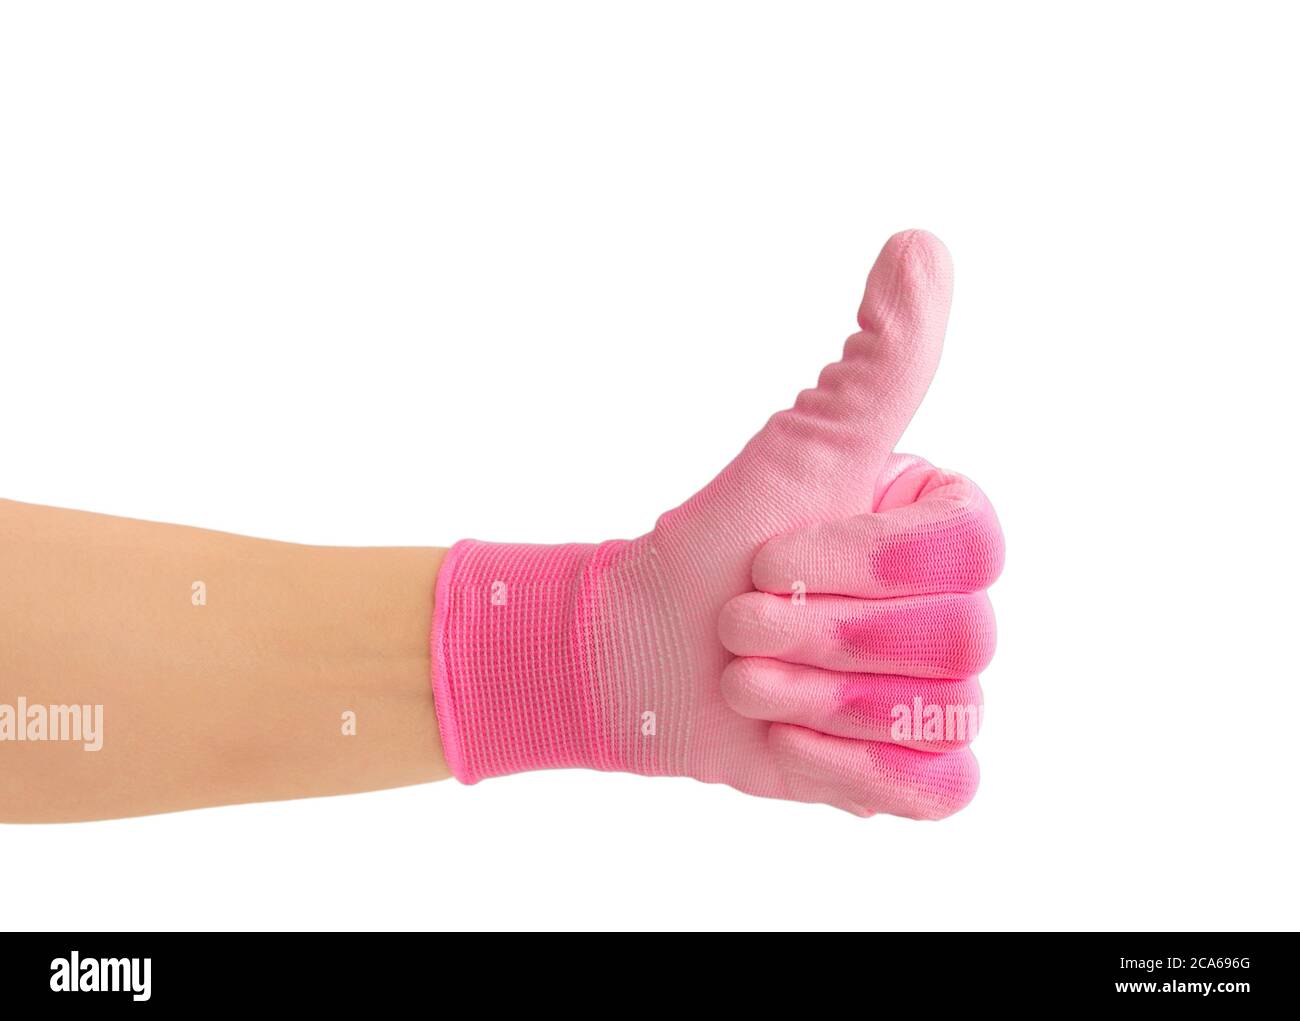 Vue rapprochée de la main de la personne portant un gant de travail de jardinage rose de couleur vive et montrant le pouce vers le haut comme un geste. Isolé sur fond blanc. Banque D'Images